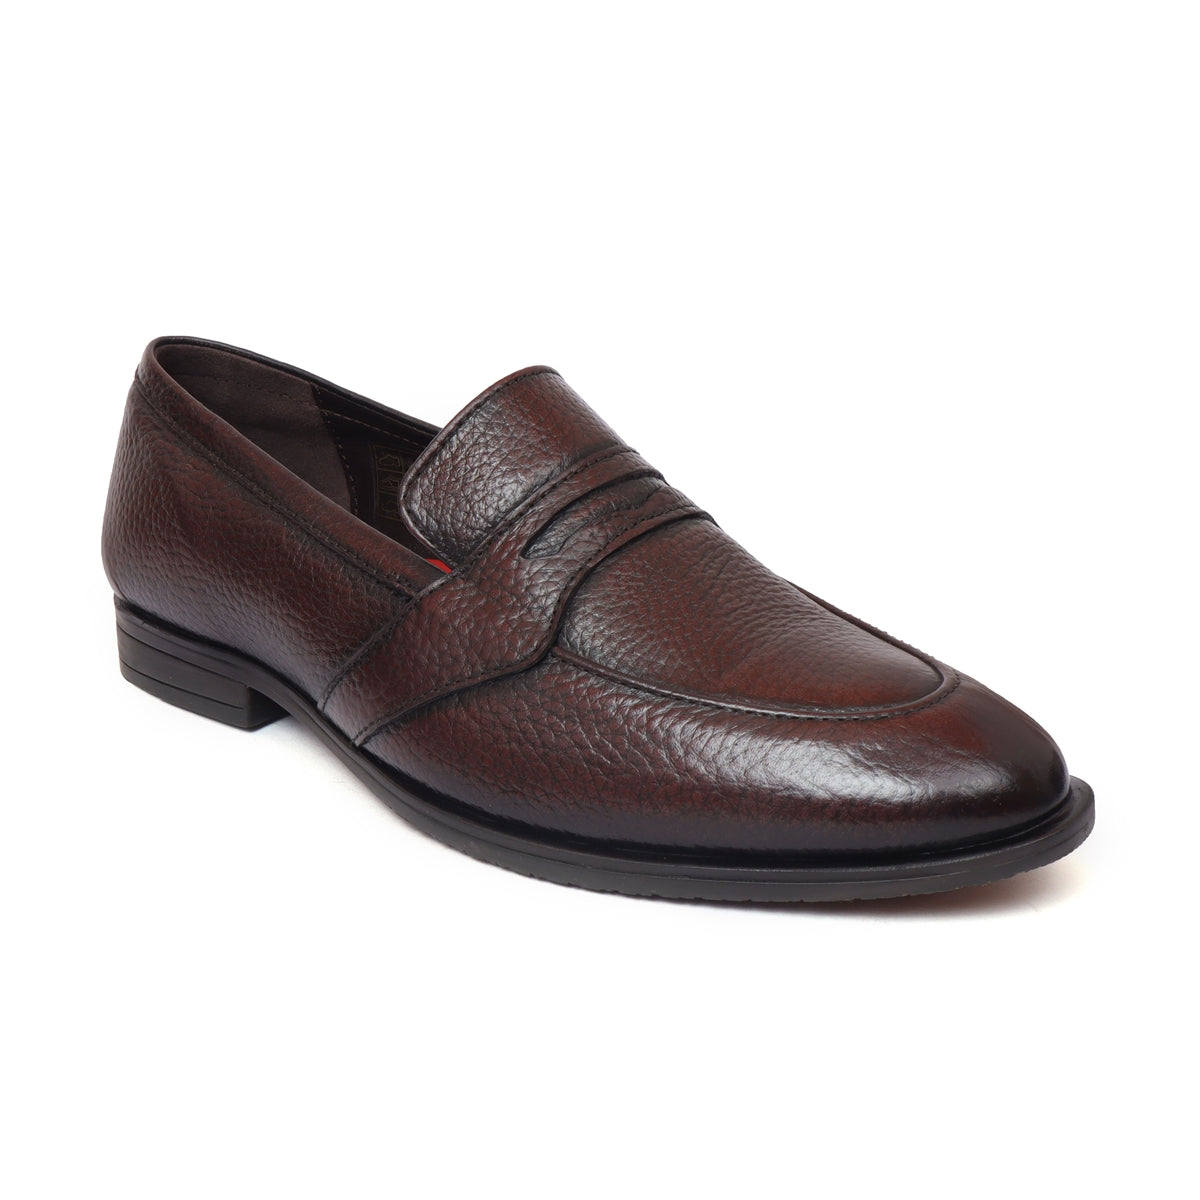 Men’s Formal Slip on Shoes BL-33_brown